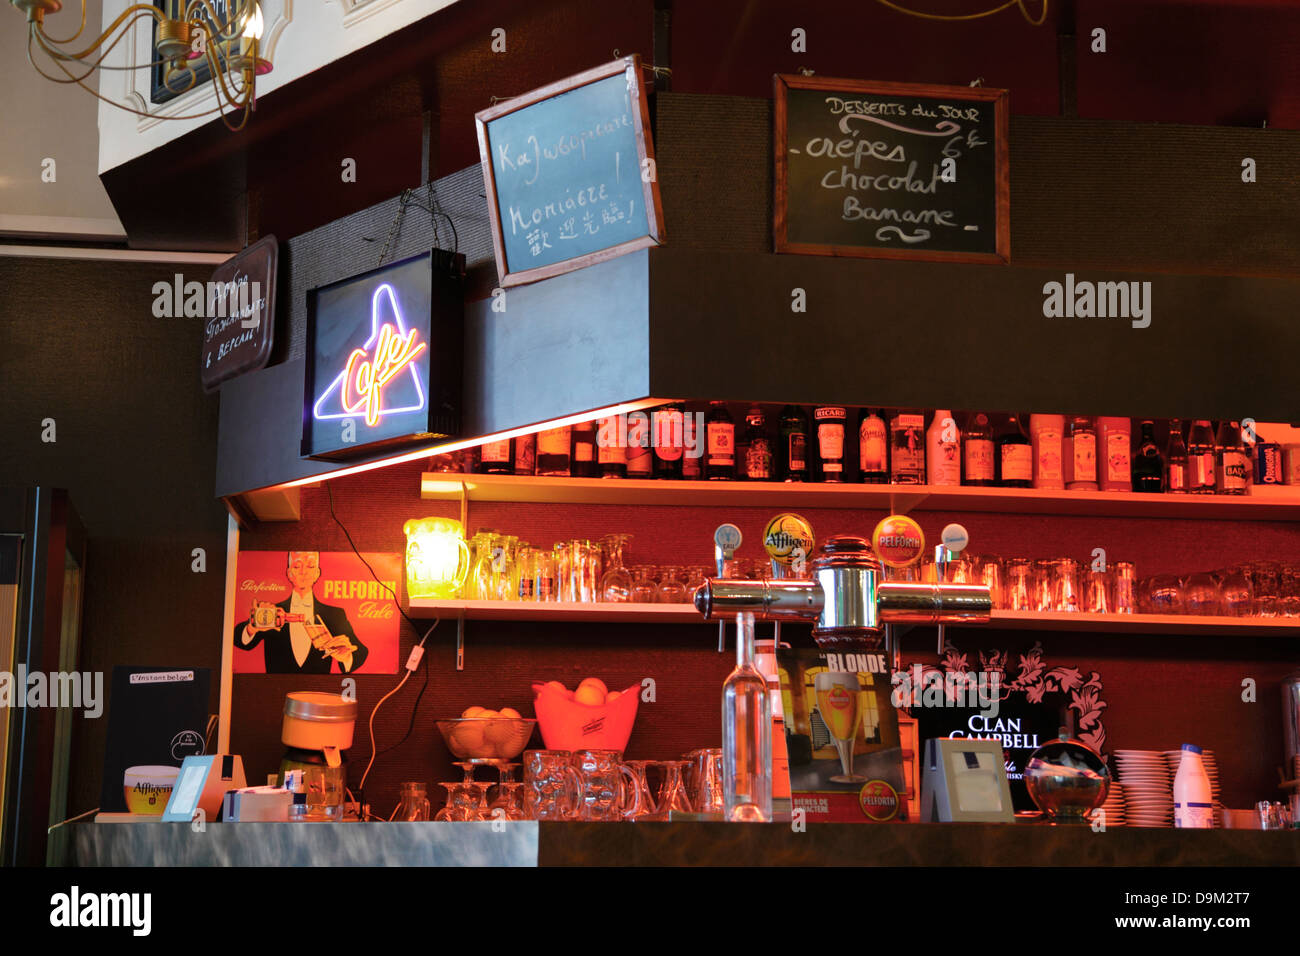 Frankreich, Versailles, Cafe, alkoholische Getränke und Gläser auf Bar Regal angezeigt. Stockfoto